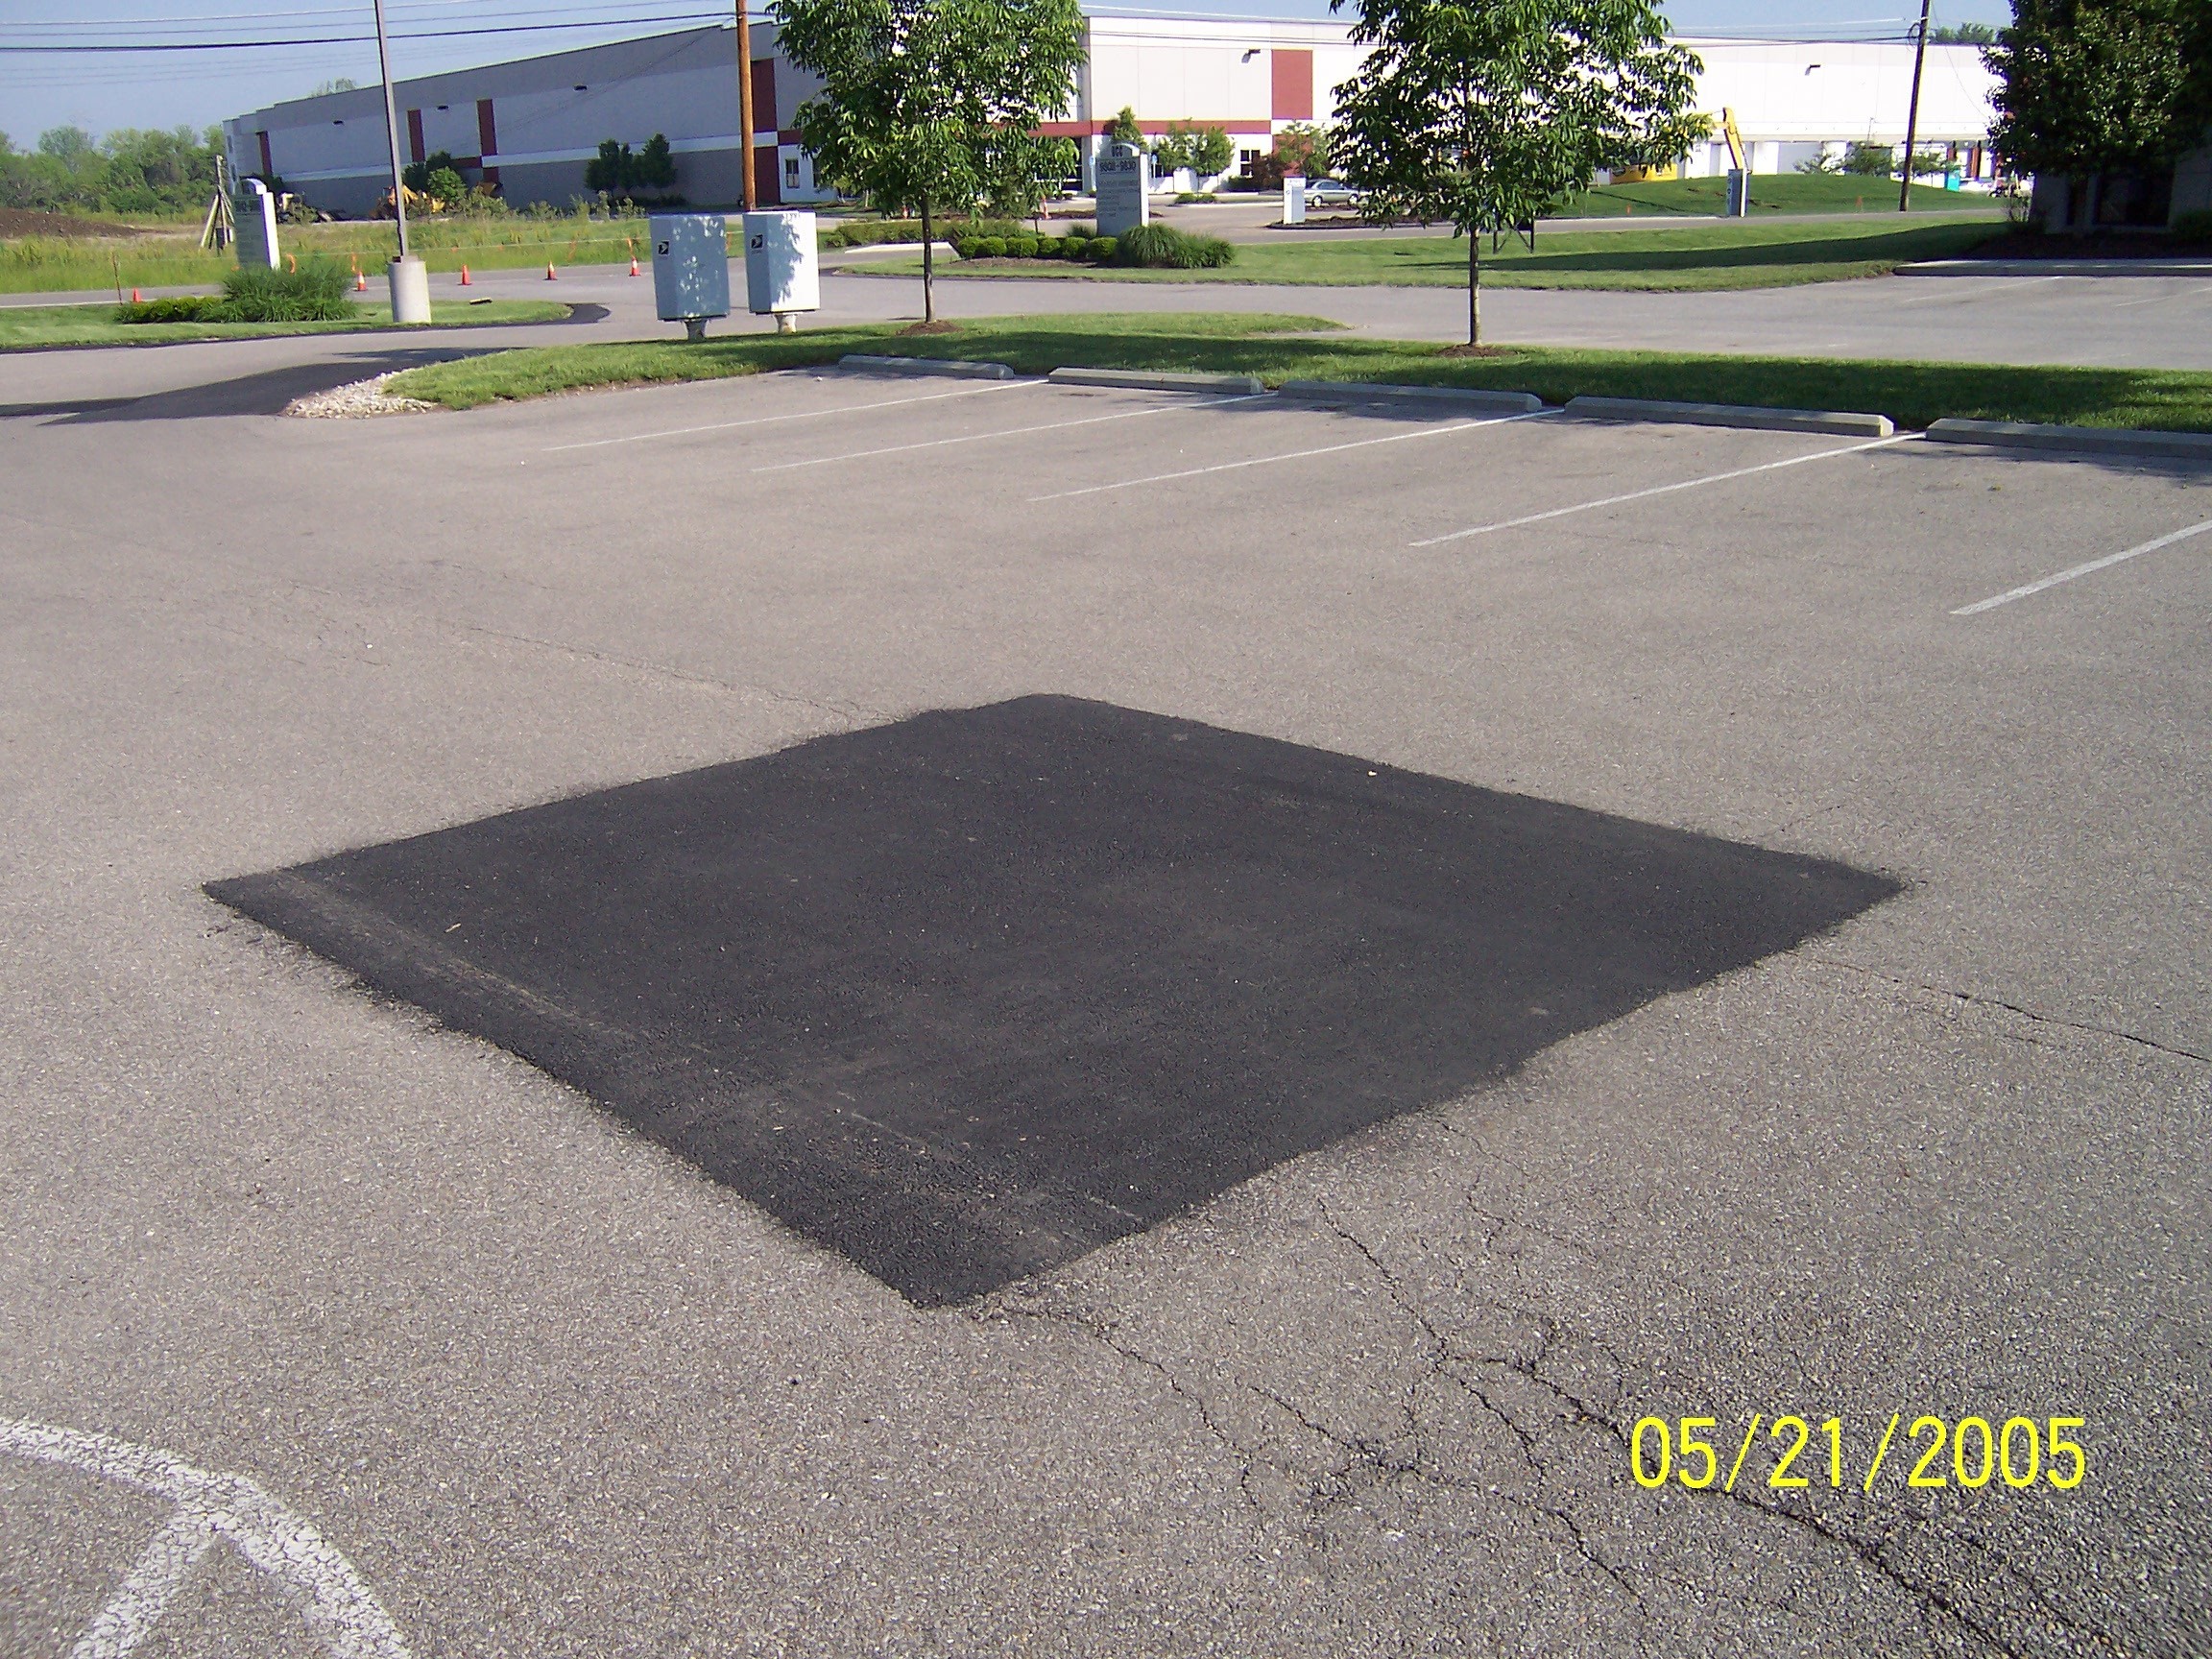 In privinta asfaltului  in functie de grosimea stratului pe care il preferati  fie cumparati  asfalt  „la rece” care se livreaza in saci de 30kg  ce poate fi lucrat in orice anotimp  sau acelasi produs este livrat vrac  pentru lucrare imediata  la p